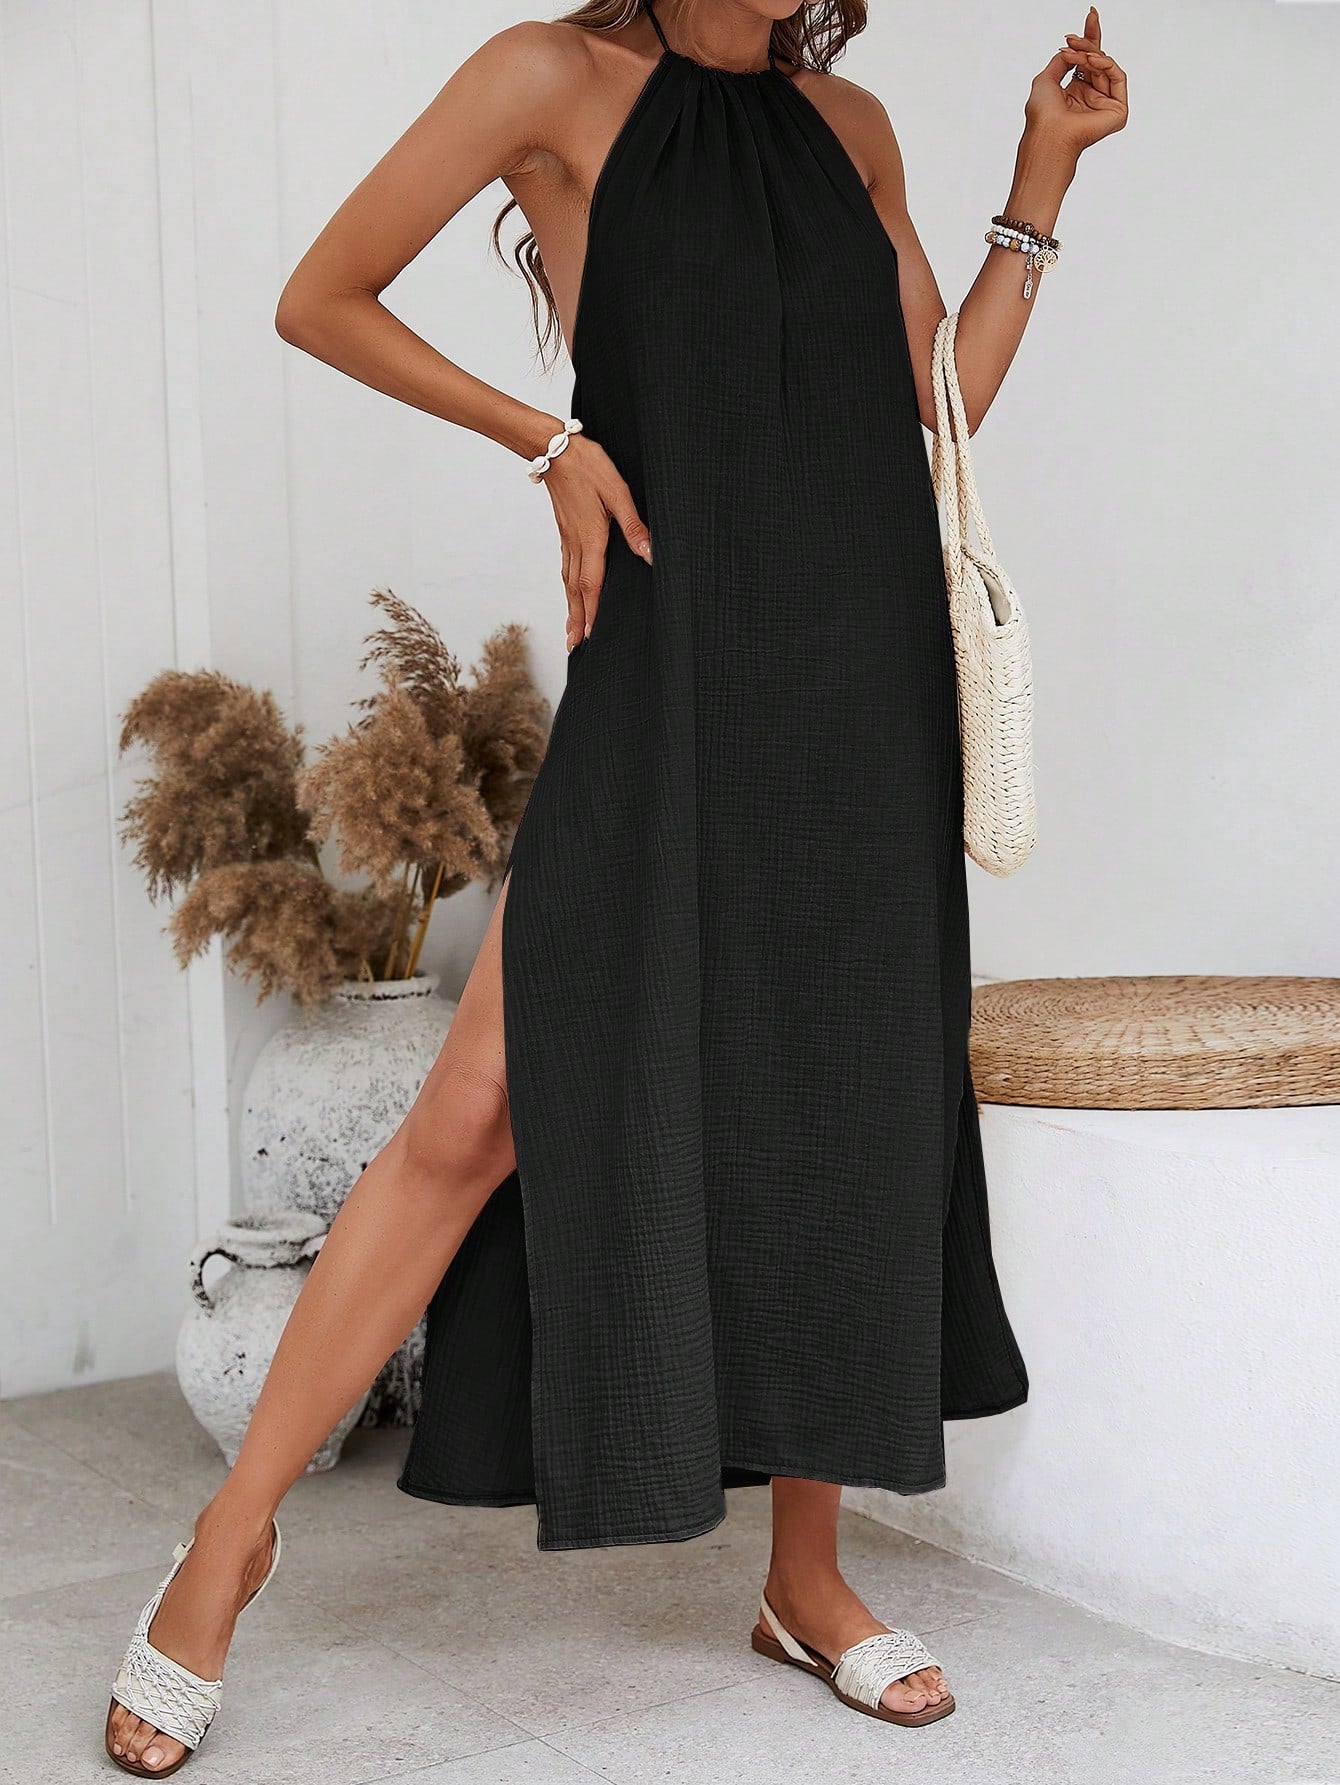 VCAY Solid High Slit Hem Halter Neck Backless Summer Women Beach Maxi Dress